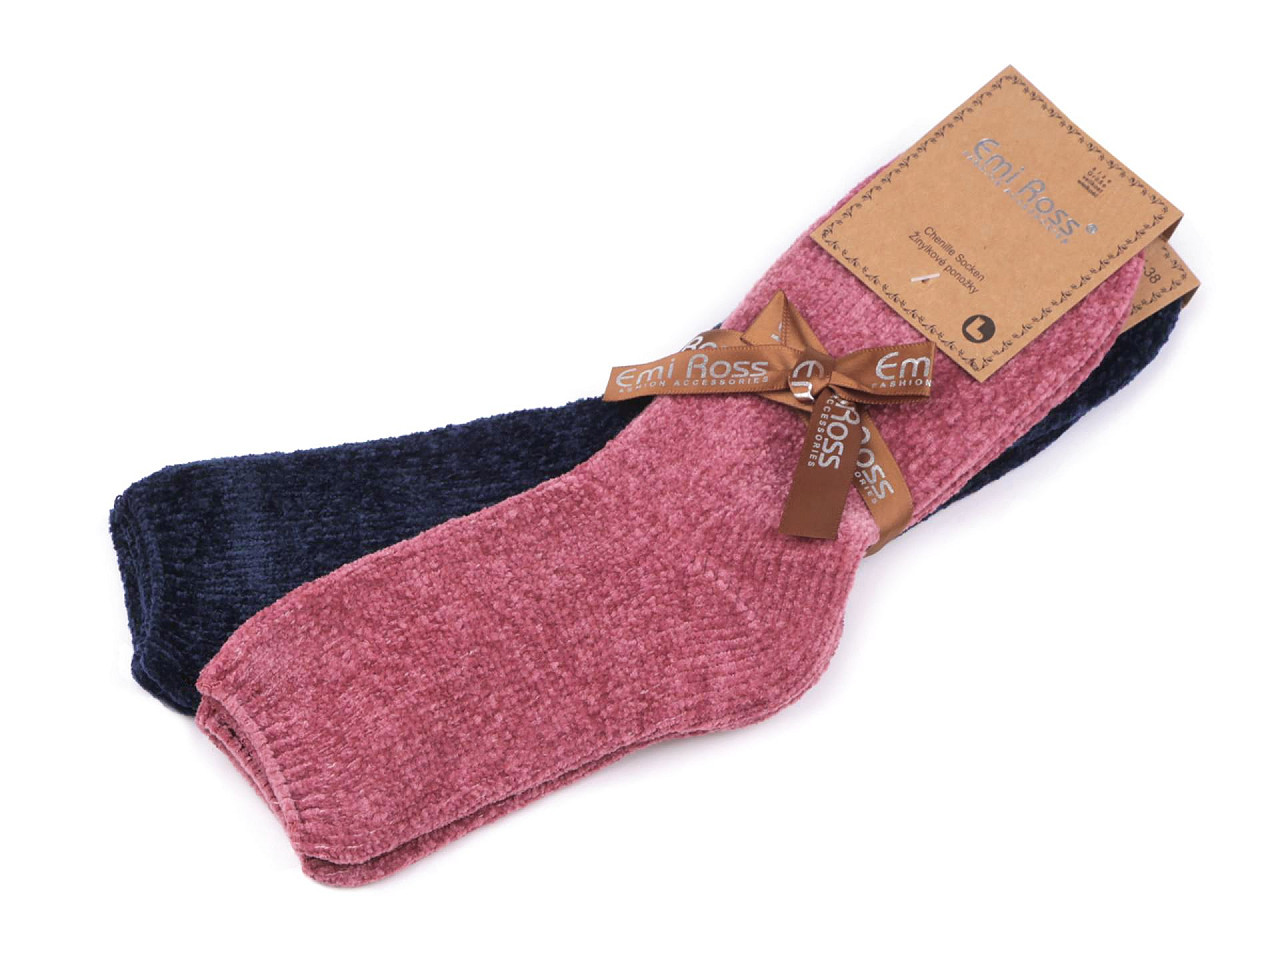 Dámské žinylkové ponožky Emi Ross, barva 21 (vel. 35-38) mix